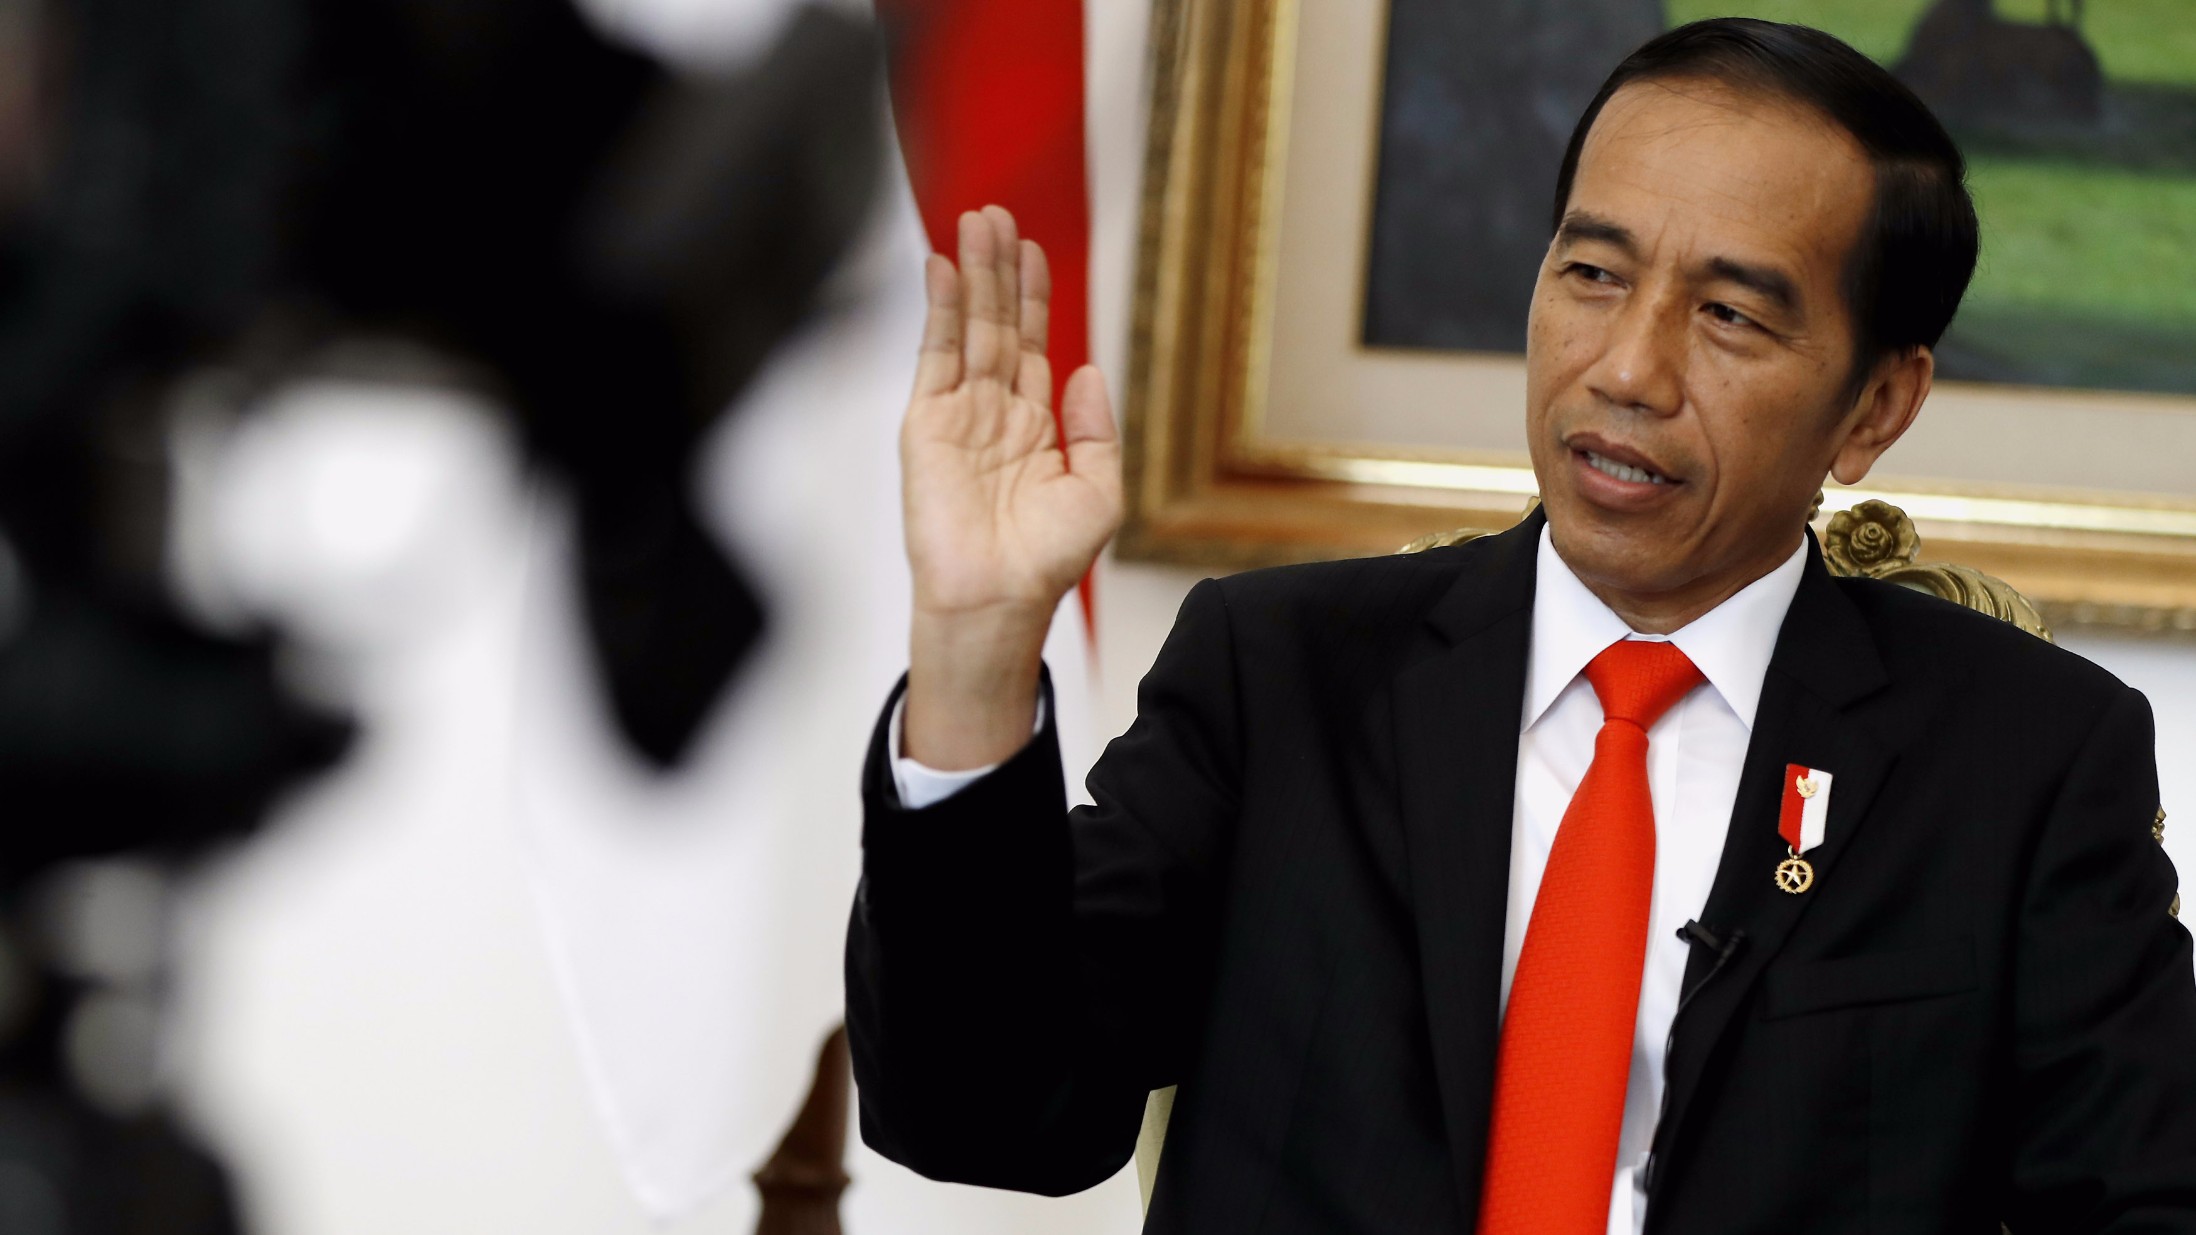 Presiden Joko Widodo Berkicau Tentang Mobil Esemka, ini Kata Warganet